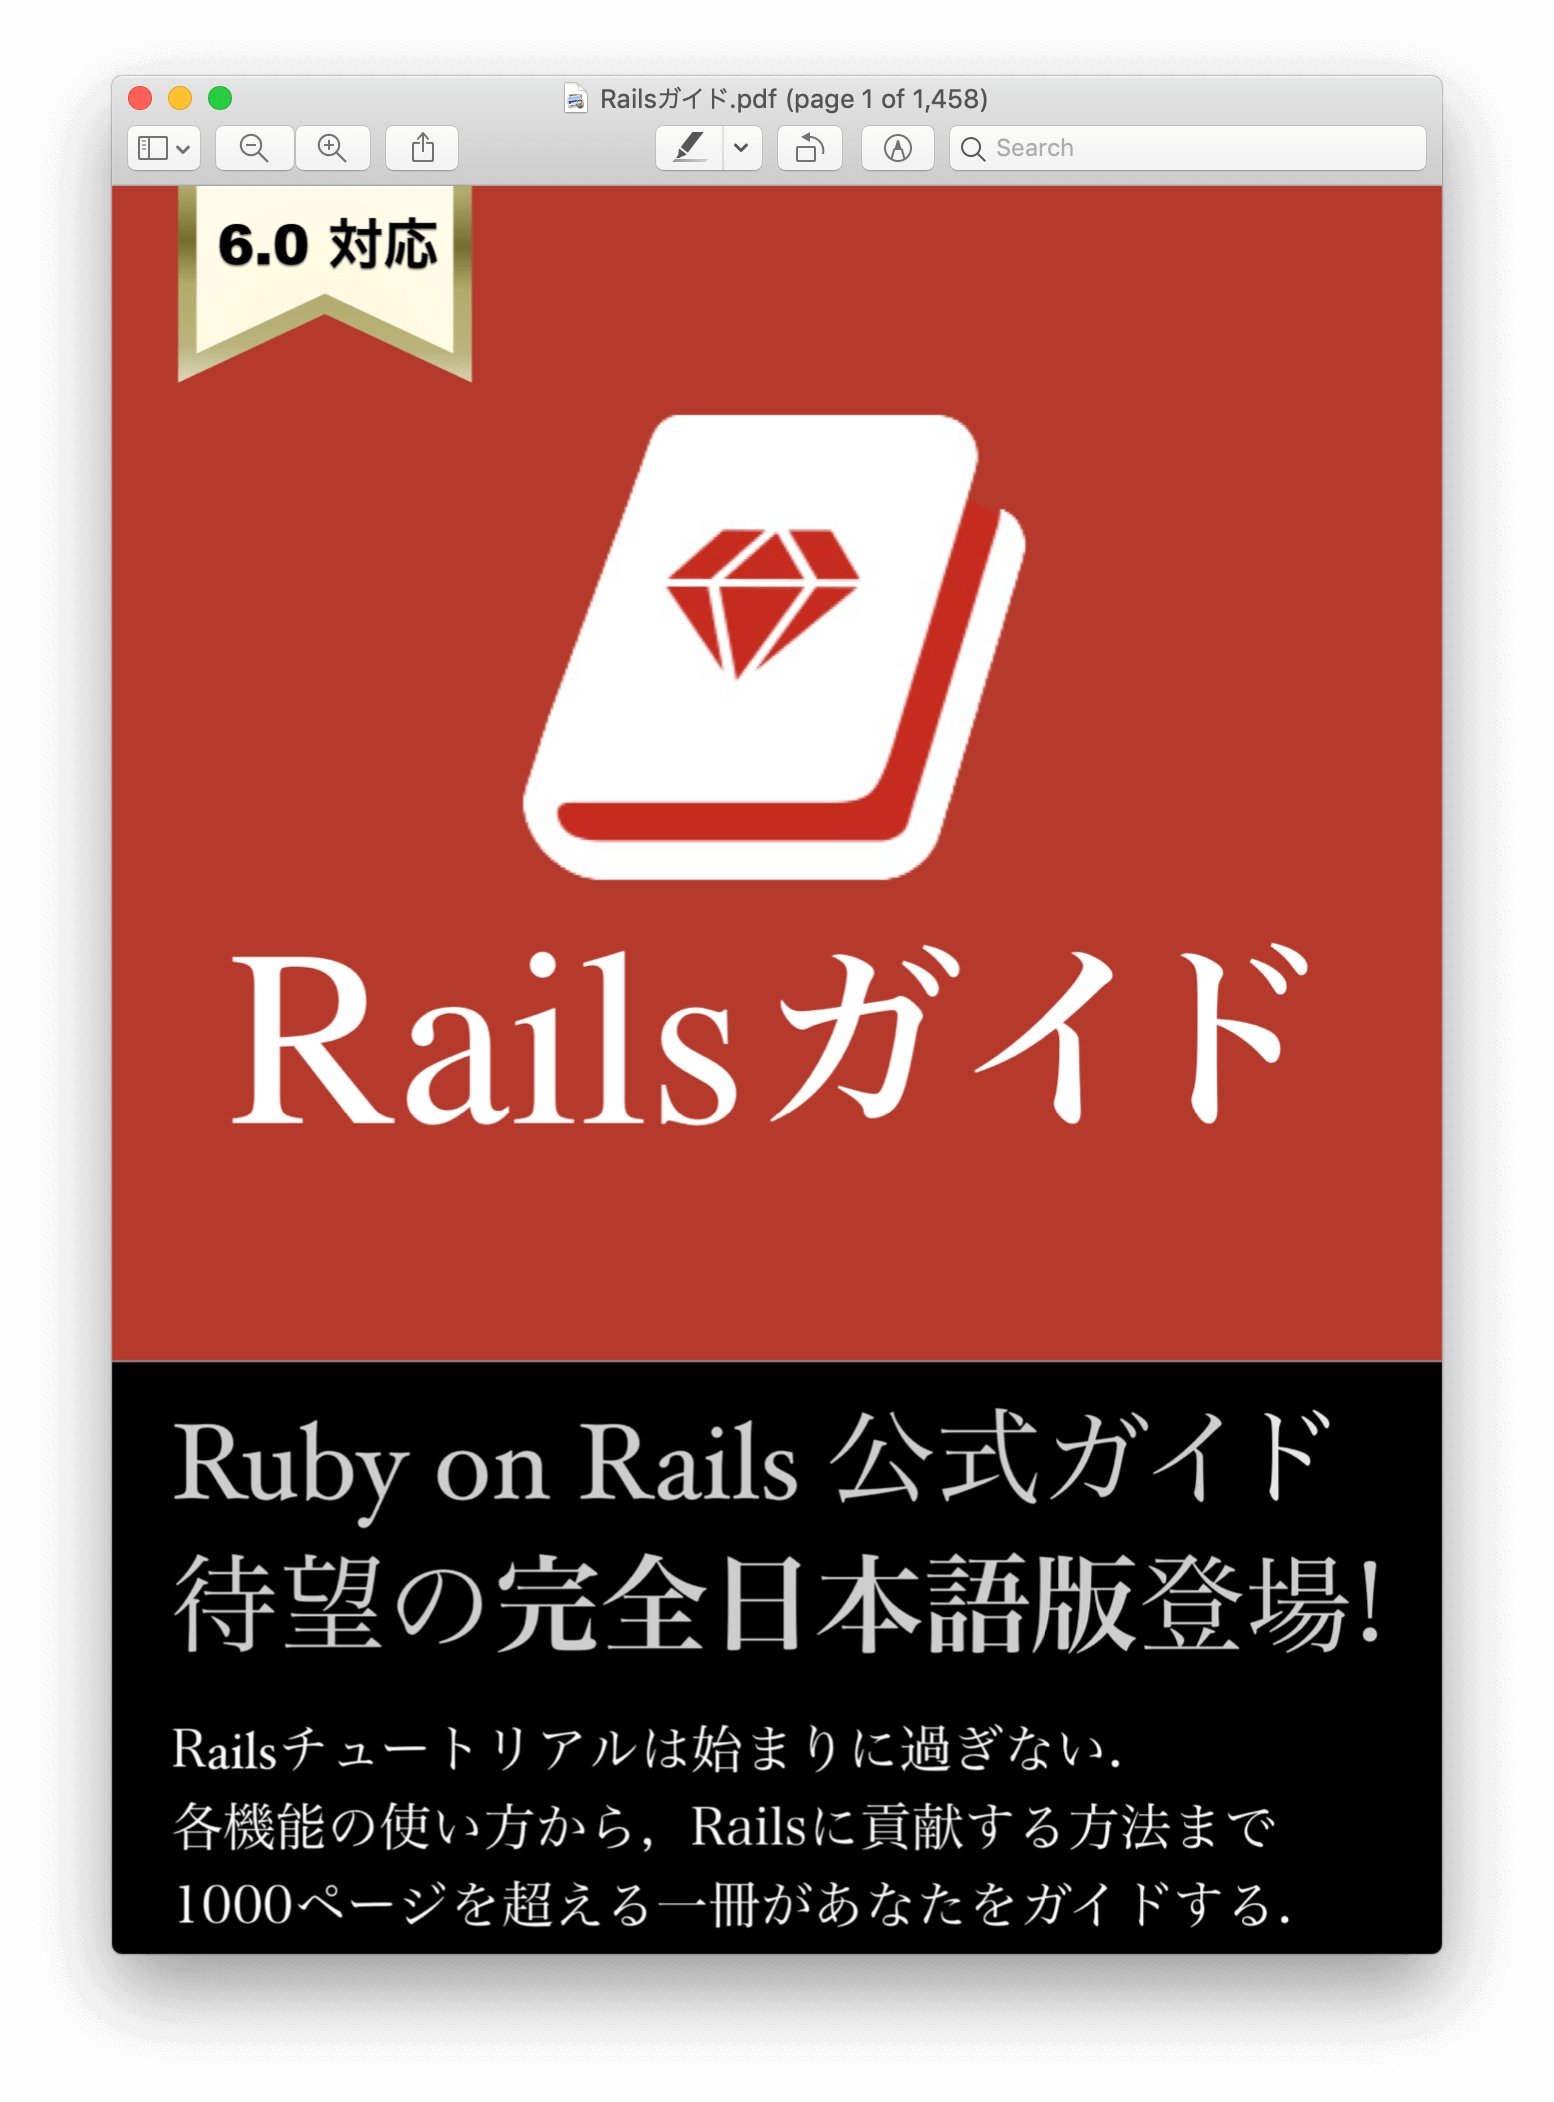 Railsガイド電子書籍6.0